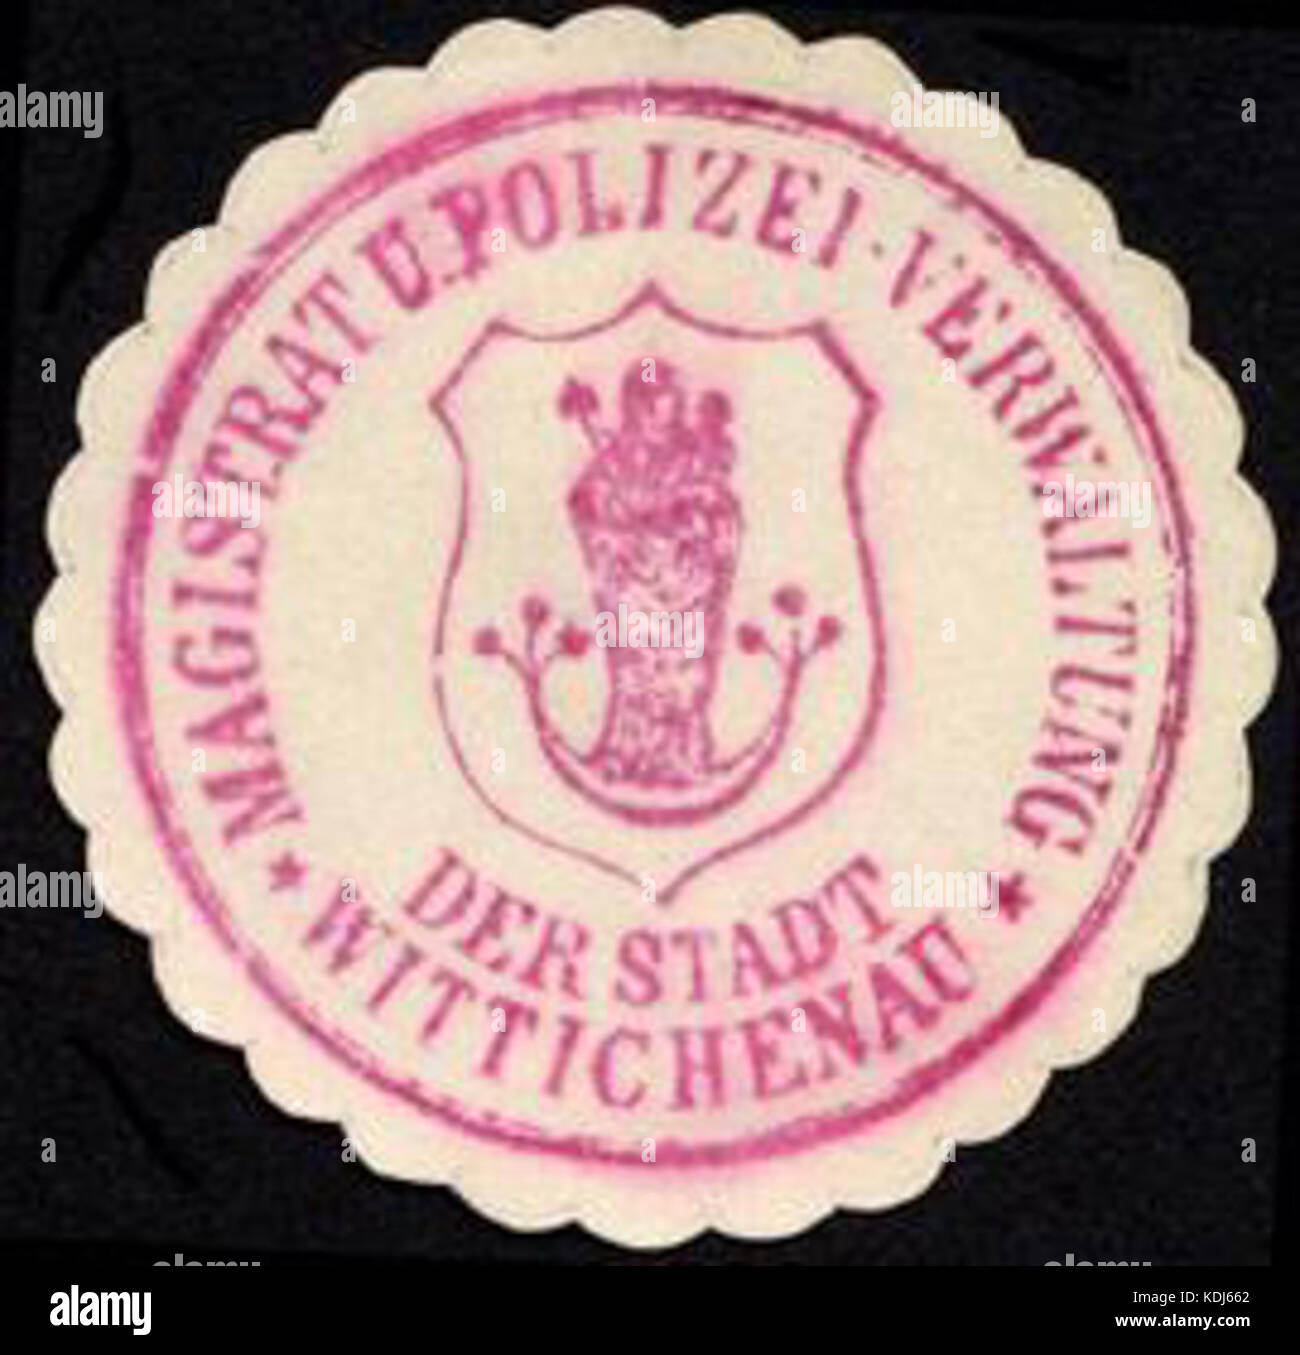 Siegelmarke Magistrat und Polizei Verwaltung der Stadt Wittichenau W 0229152 Stockfoto